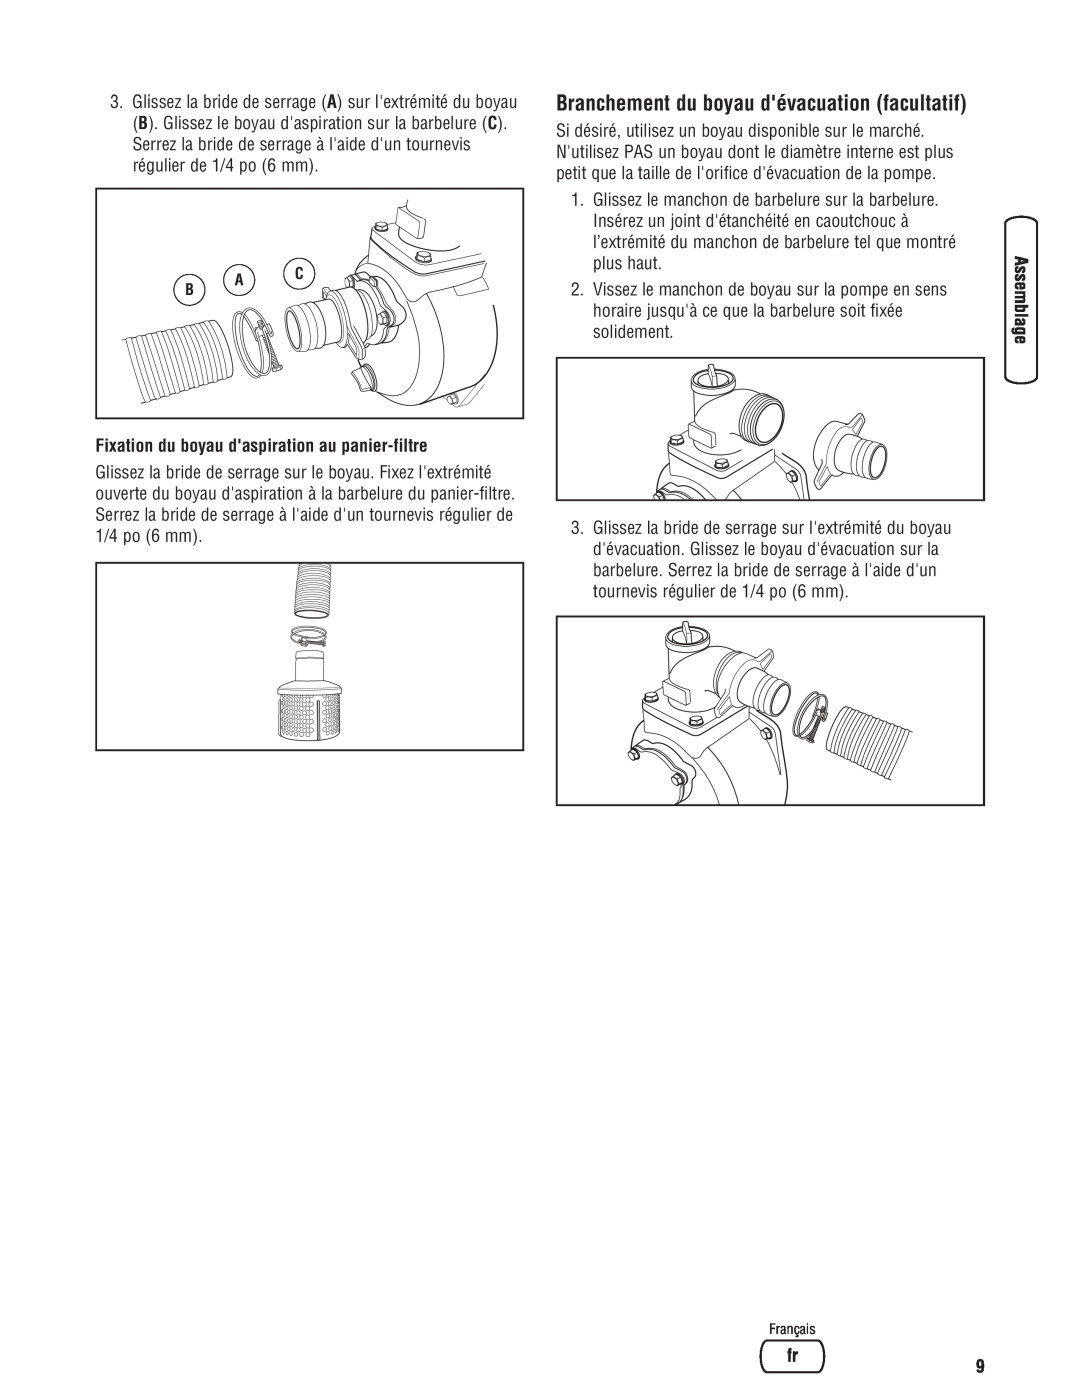 Briggs & Stratton Water Transfer Pump manual Branchement du boyau dévacuation facultatif 